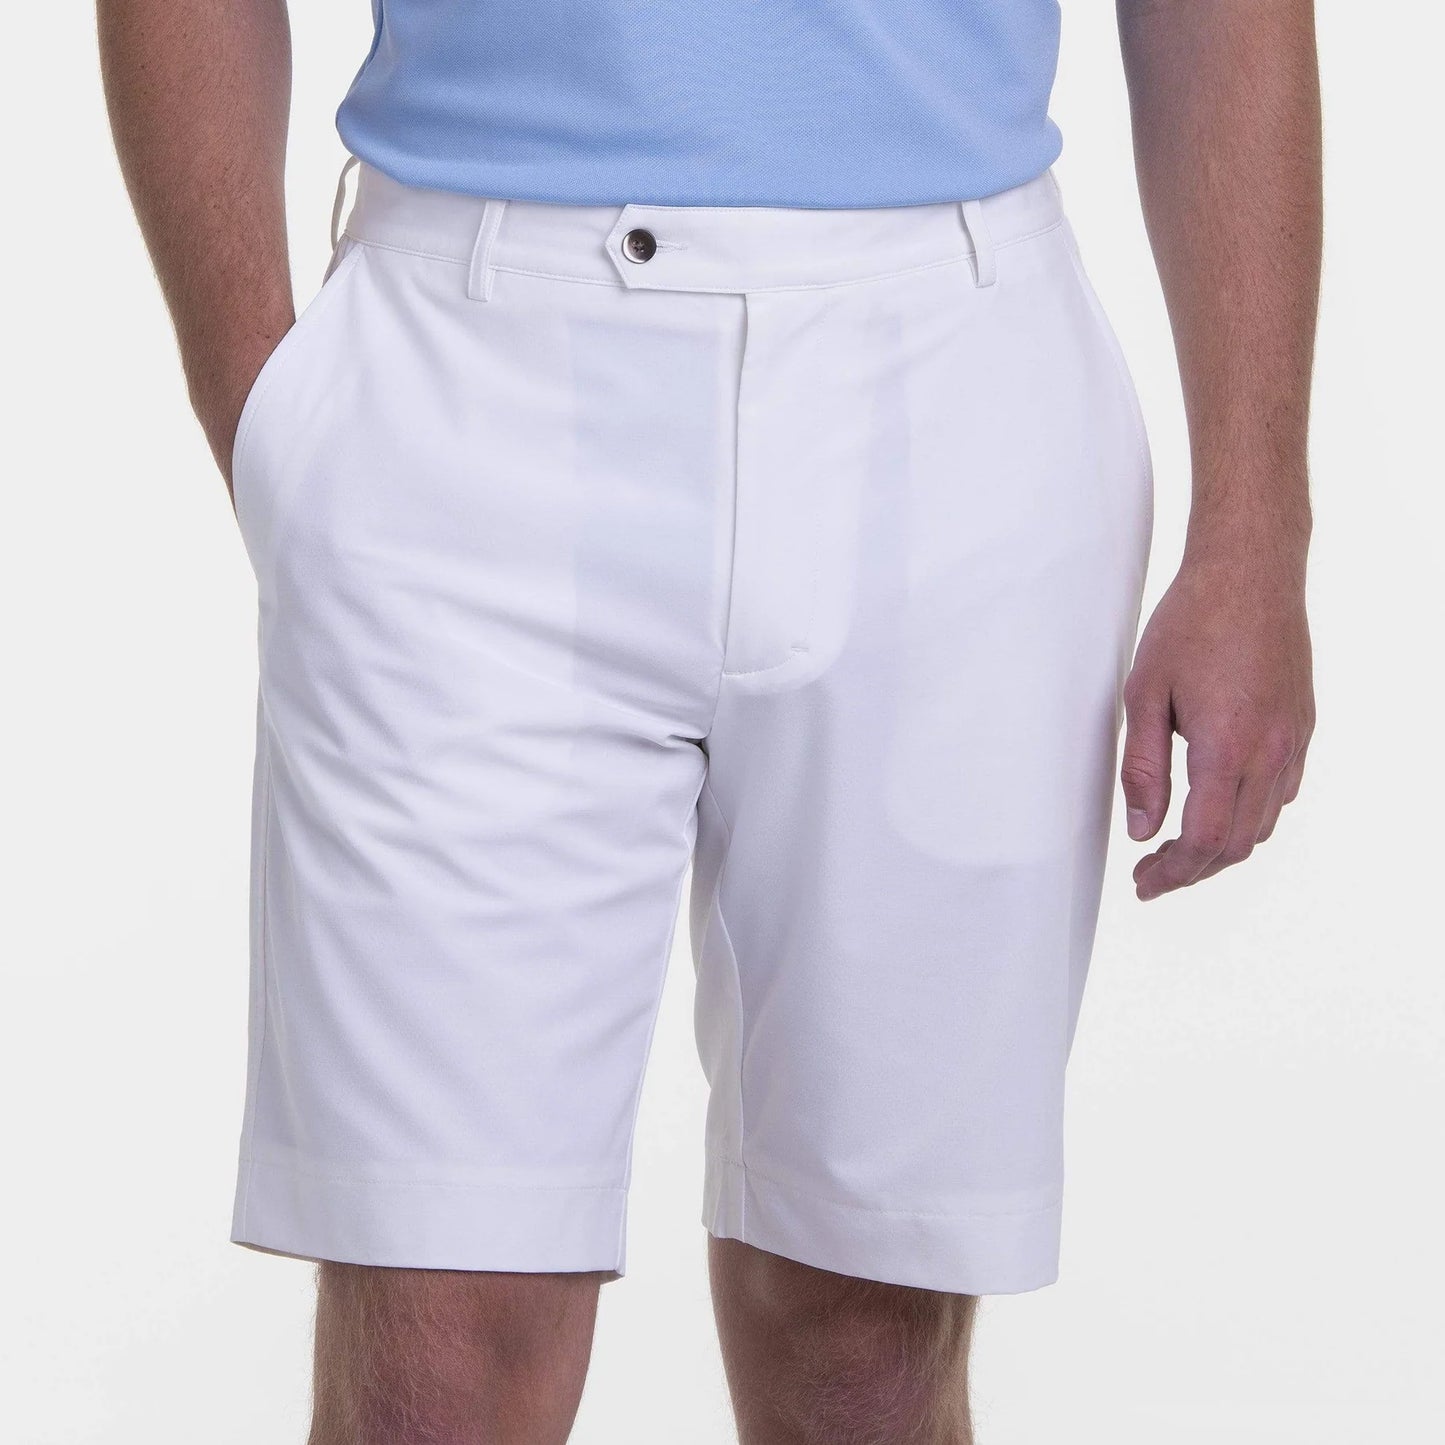 Bermuda Shorts - Solid Color